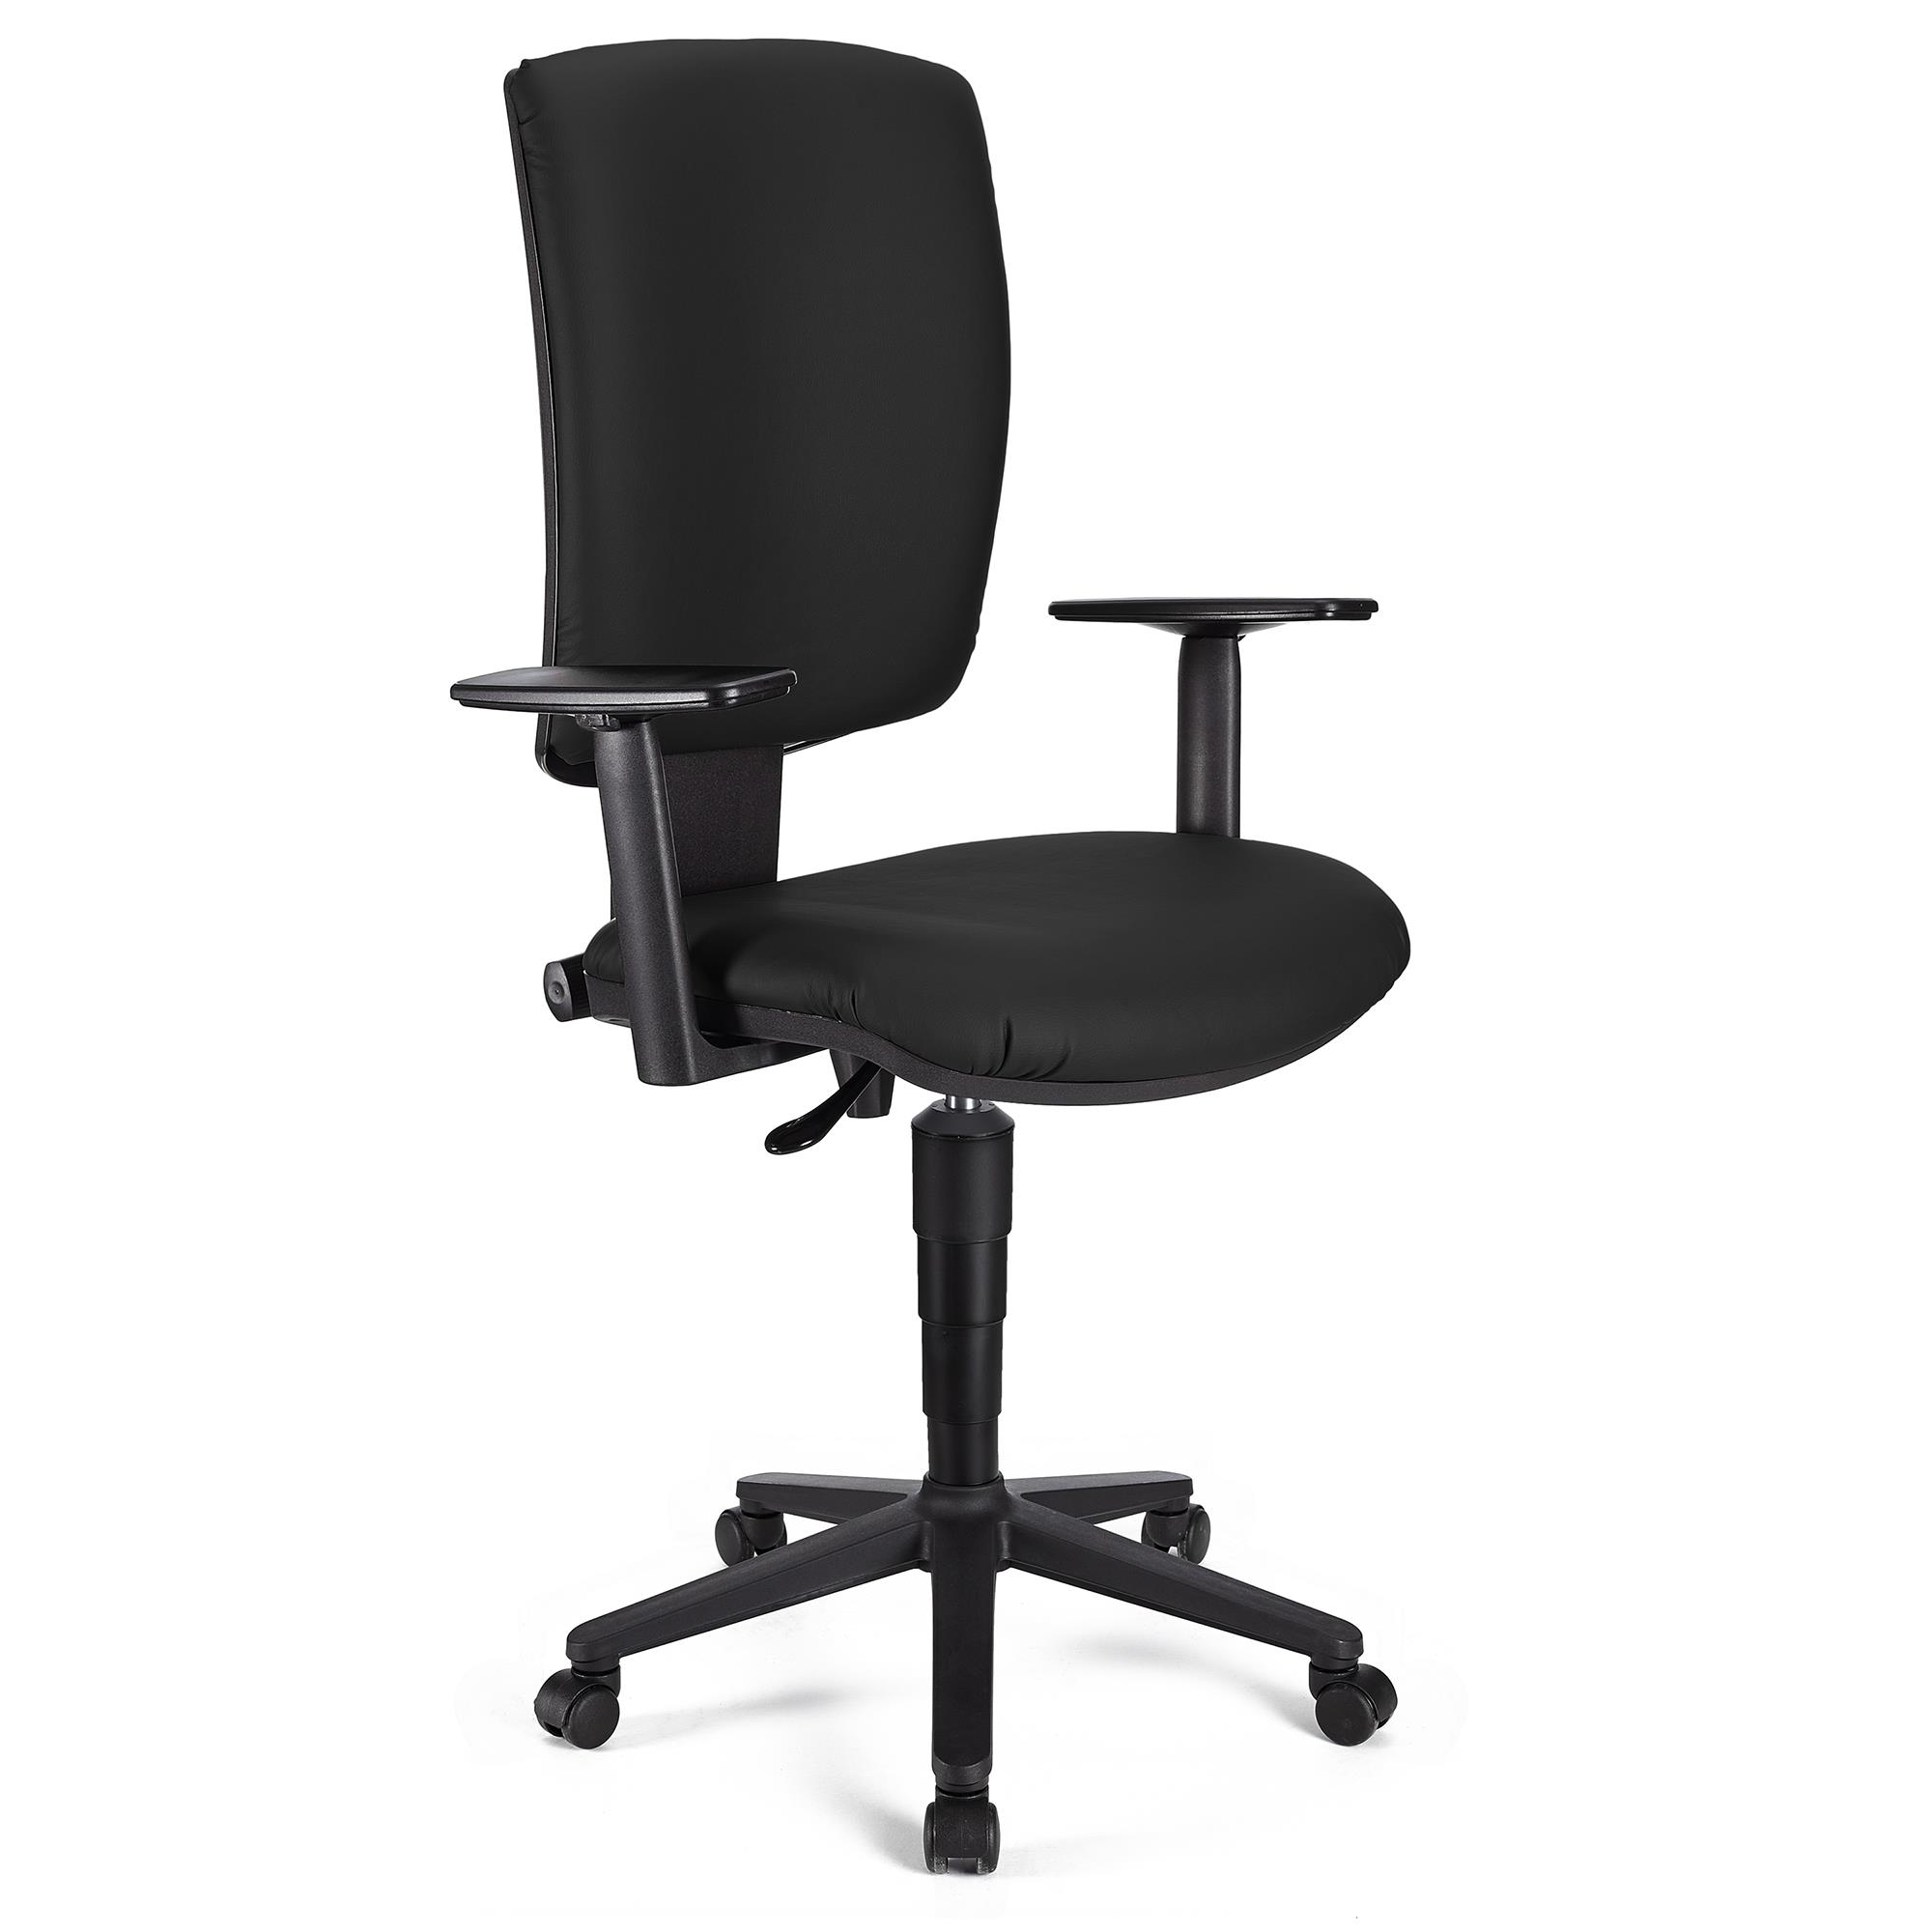 Bürostuhl ATLAS PLUS LEDER, verstellbare Rücken- und Armlehnen, dicke Polsterung, Farbe Schwarz